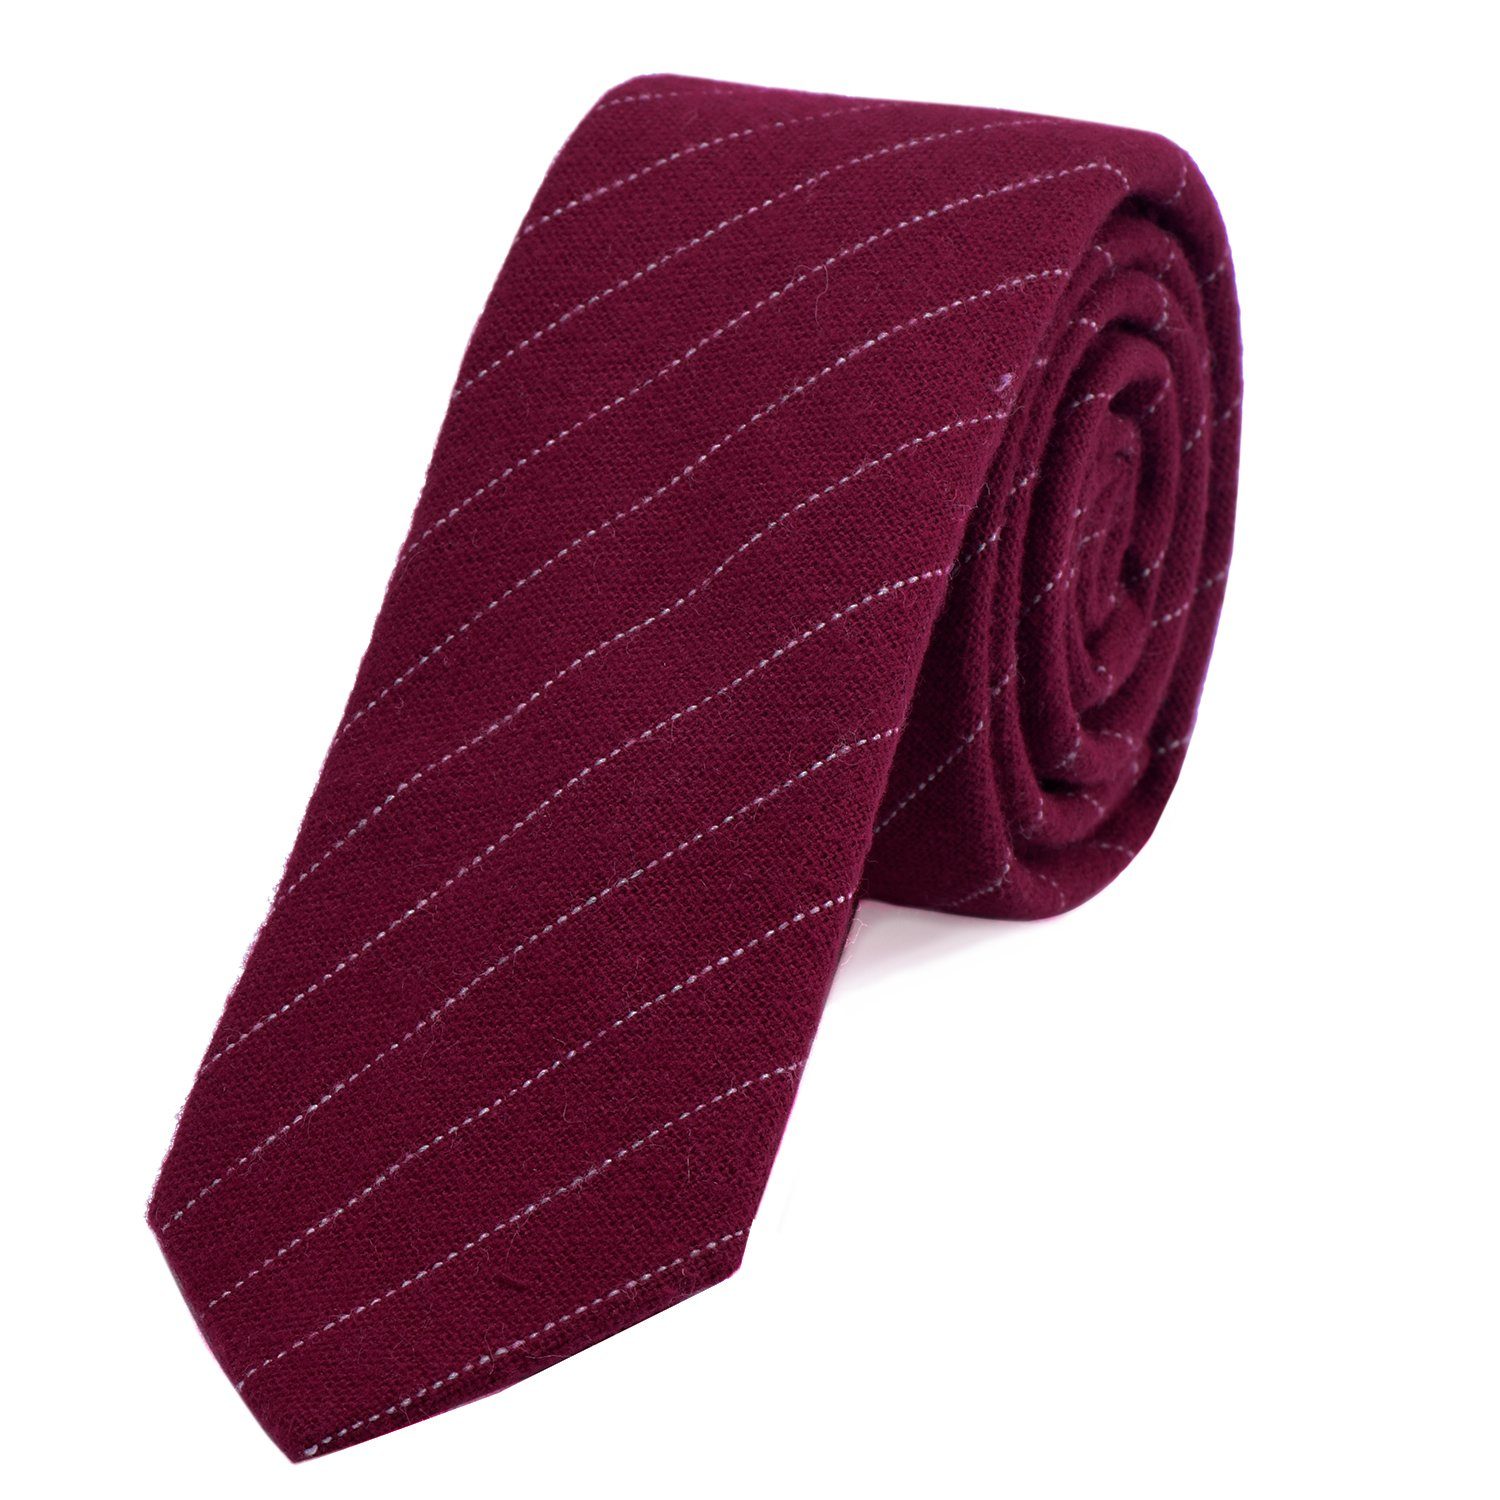 DonDon Krawatte Herren Krawatte 6 cm mit Karos oder Streifen (Packung, 1-St., 1x Krawatte) Baumwolle, kariert oder gestreift, für Büro oder festliche Veranstaltungen bordeauxrot gestreift